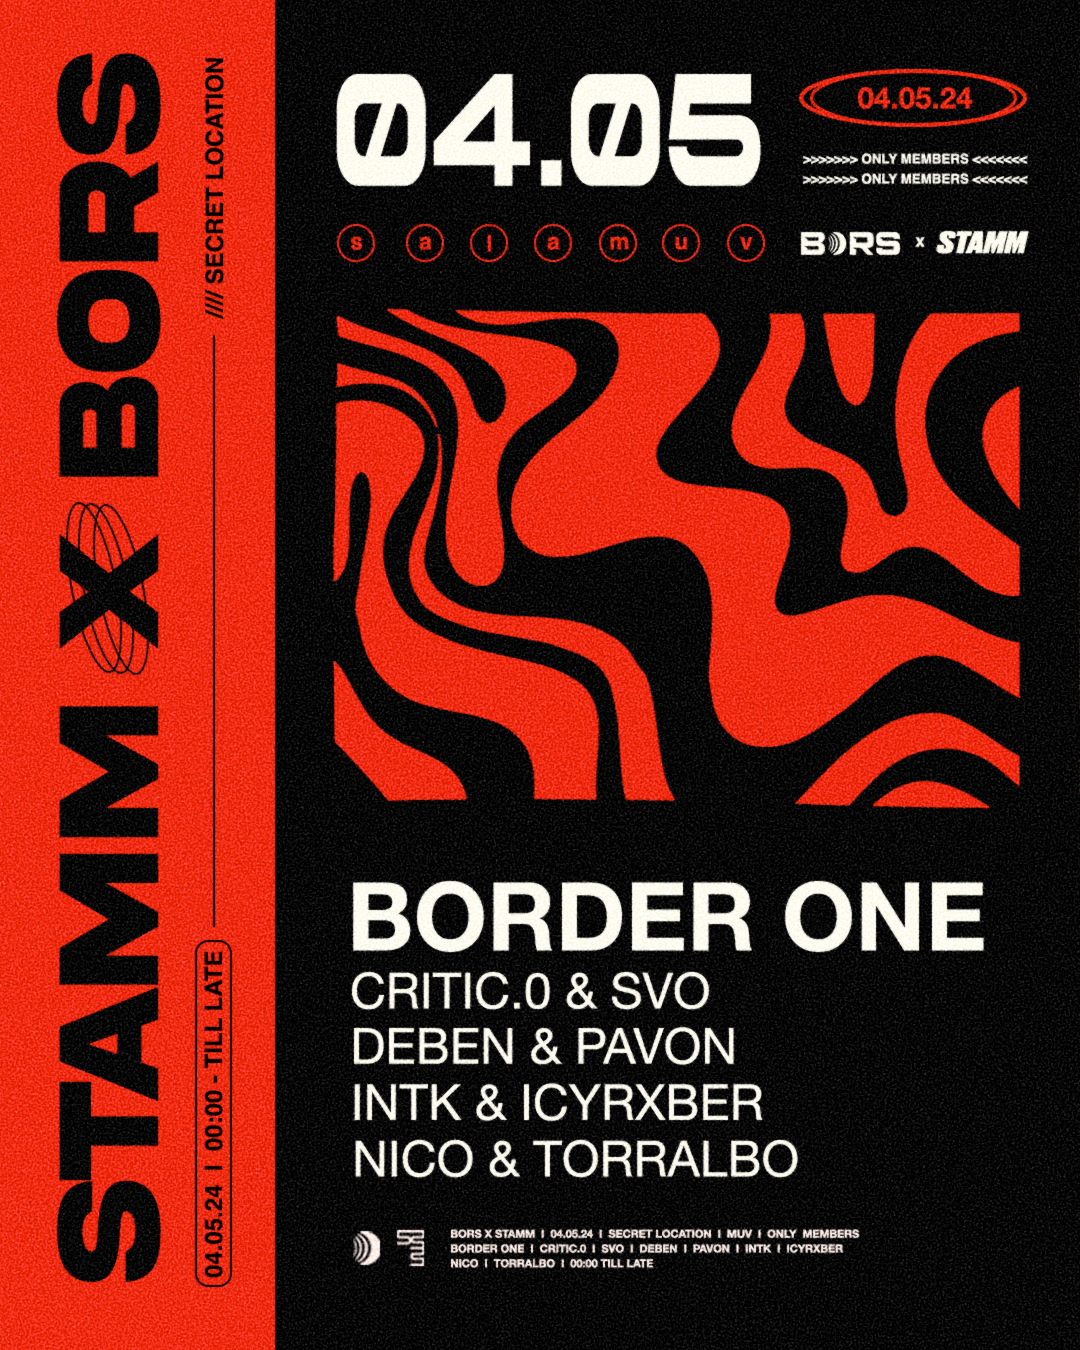 Stamm x Bors // Border One - フライヤー表